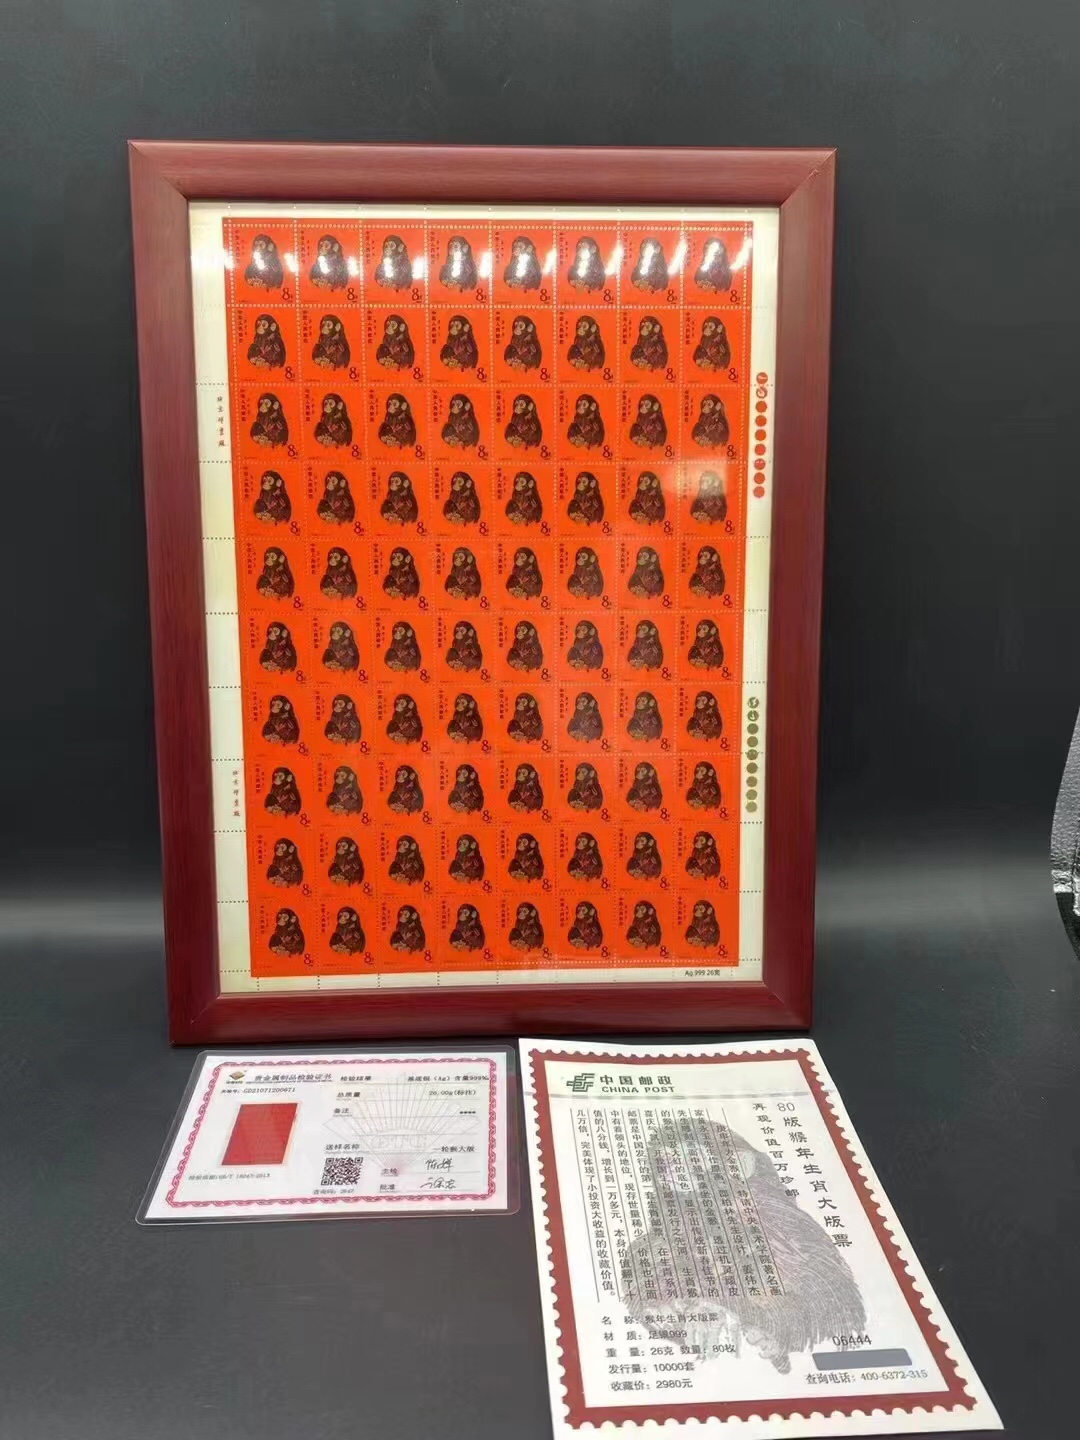 1980猴票纯银大版纪念套装庚申猴年生肖大版邮票收藏纪念礼品邮政